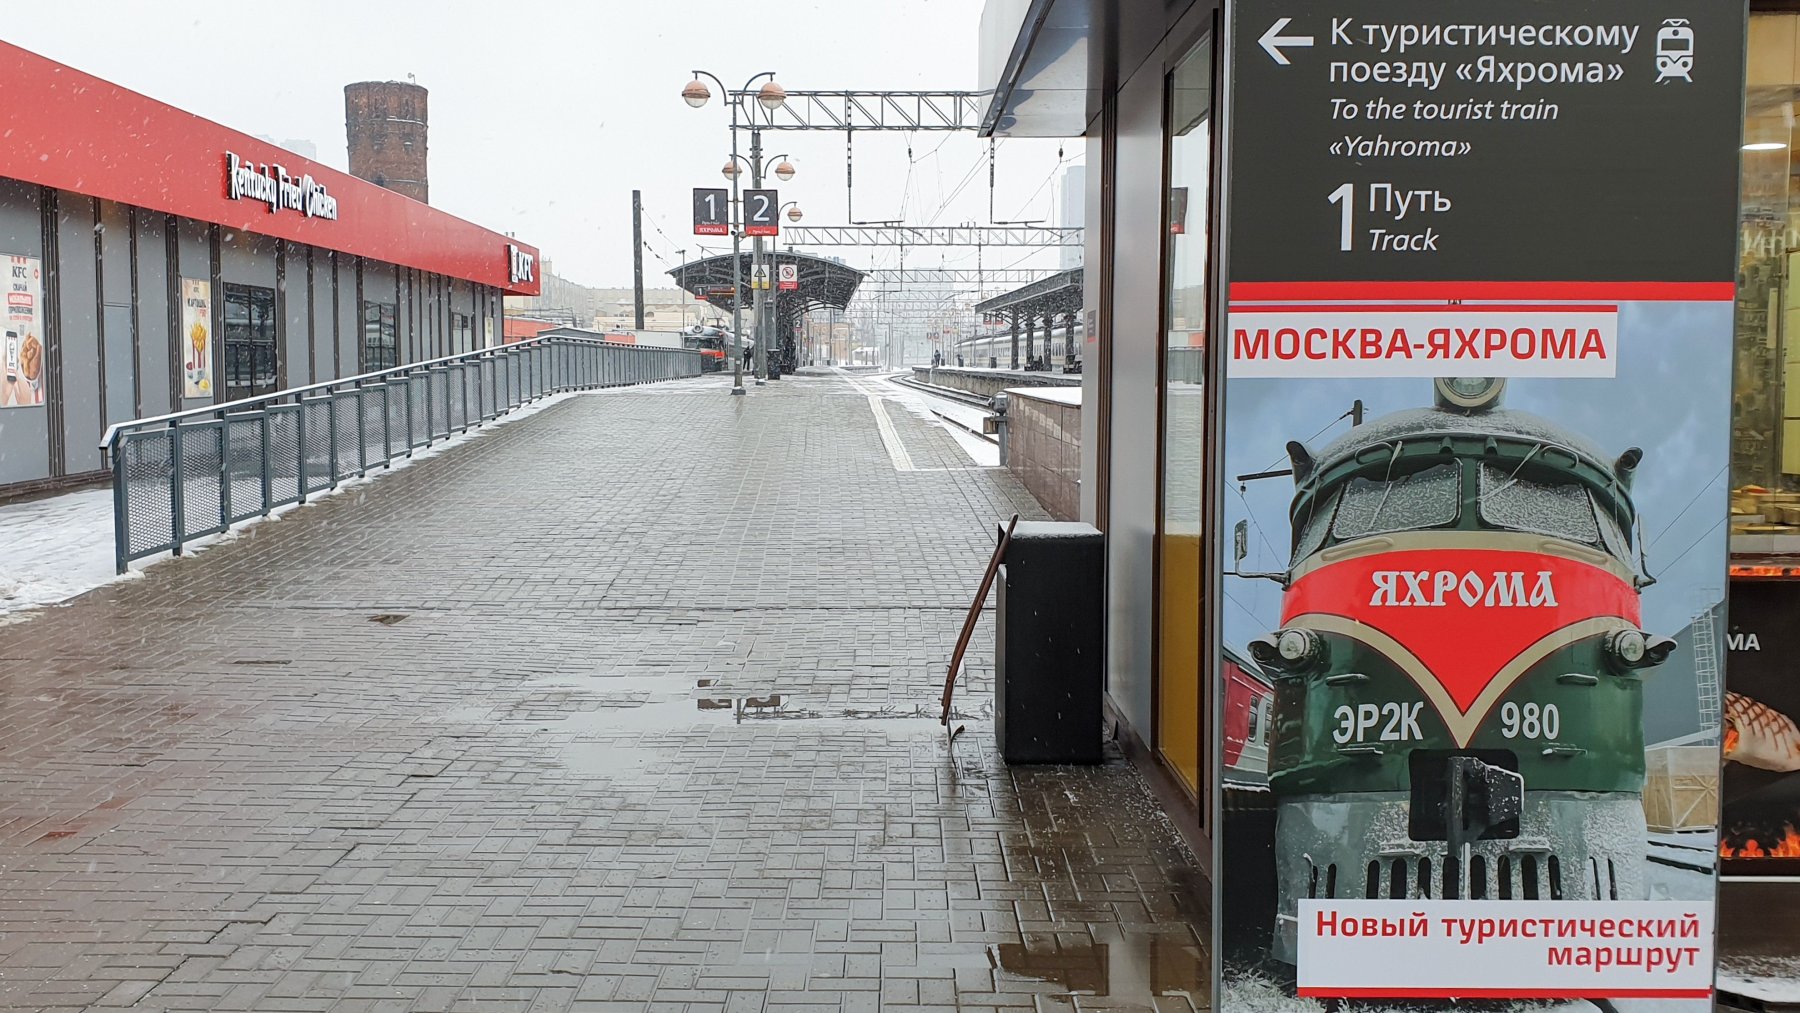 Билеты на ретропоезд «Яхрома» доступны по фиксированной стоимости 300 рублей в будние и выходные дни